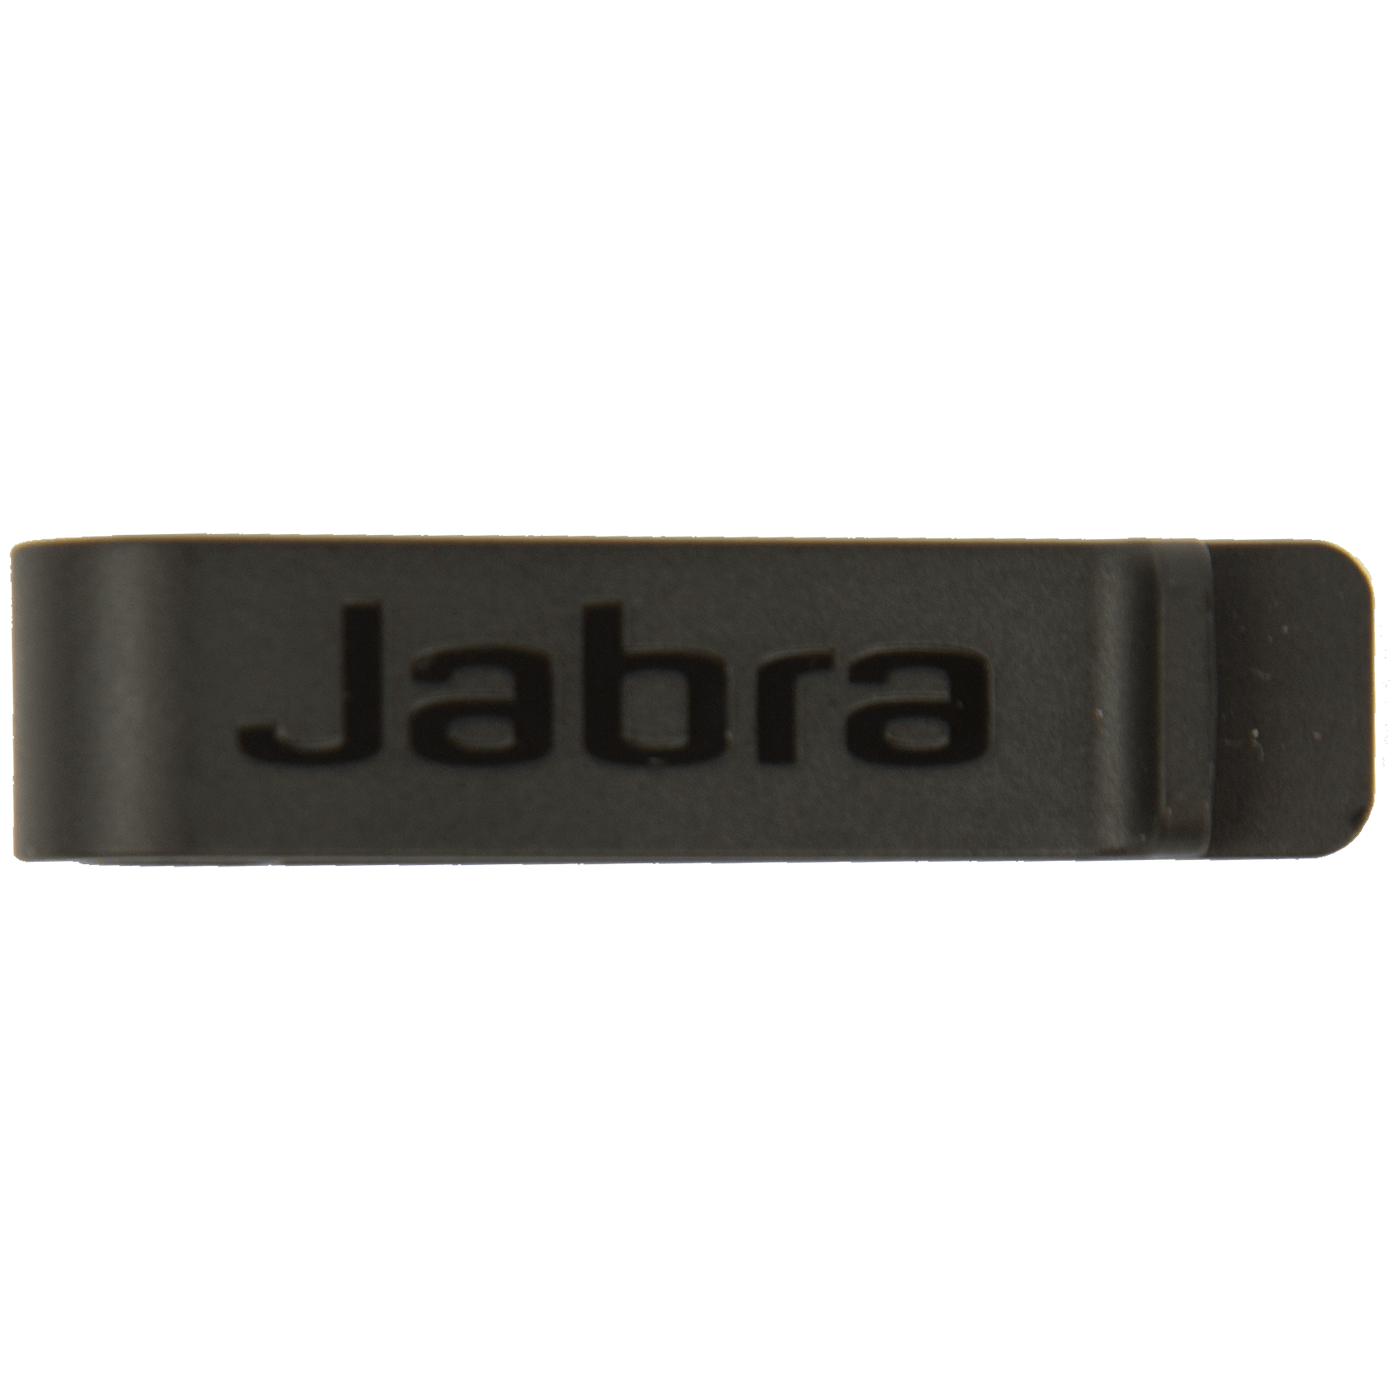  Jabra Biz 2300 Clothing Clip 